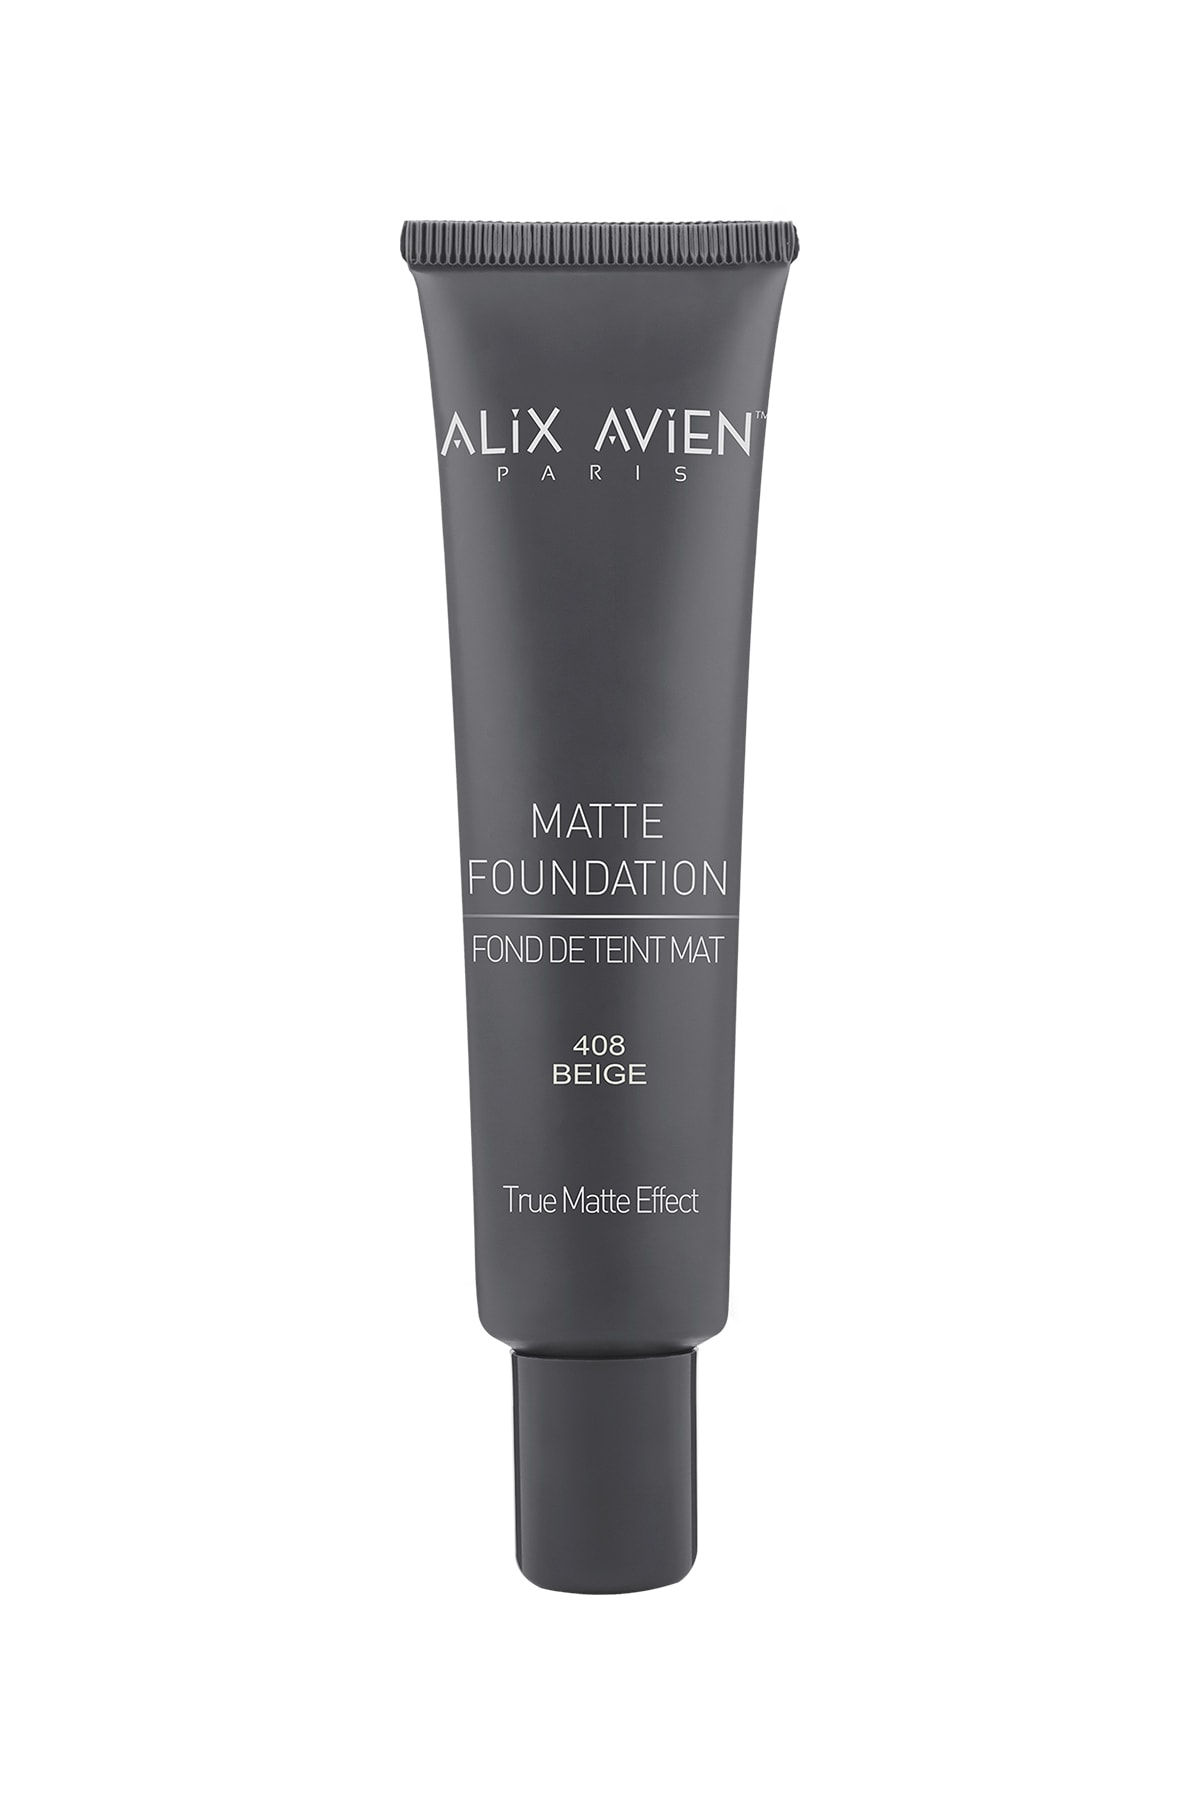 Alix Avien Matte Foundation - Mat Fondöten 408 Beige Yüksek Kapatıcı Uzun Süre Kalıcı Etki - 40 ml